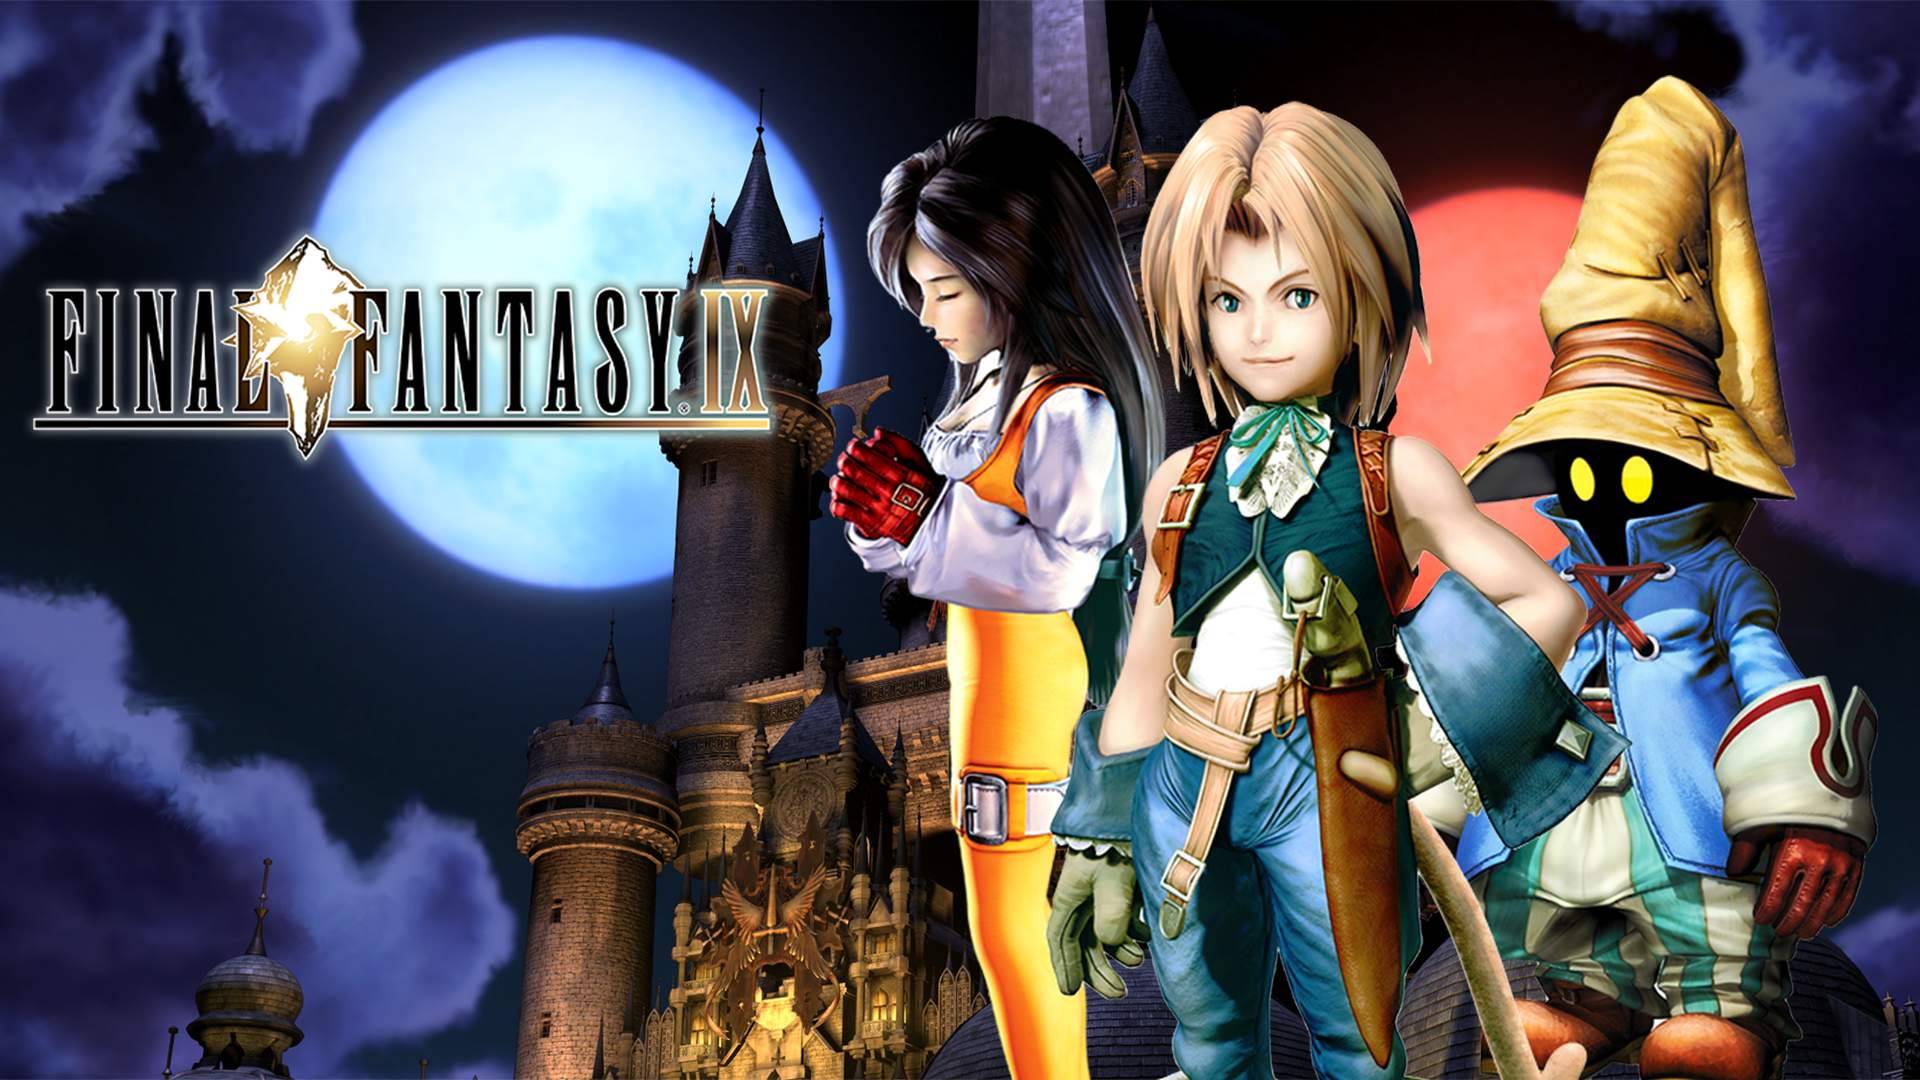 ПОСЛЕДНЯЯ ФАНТАЗИЯ | Final Fantasy IX #2